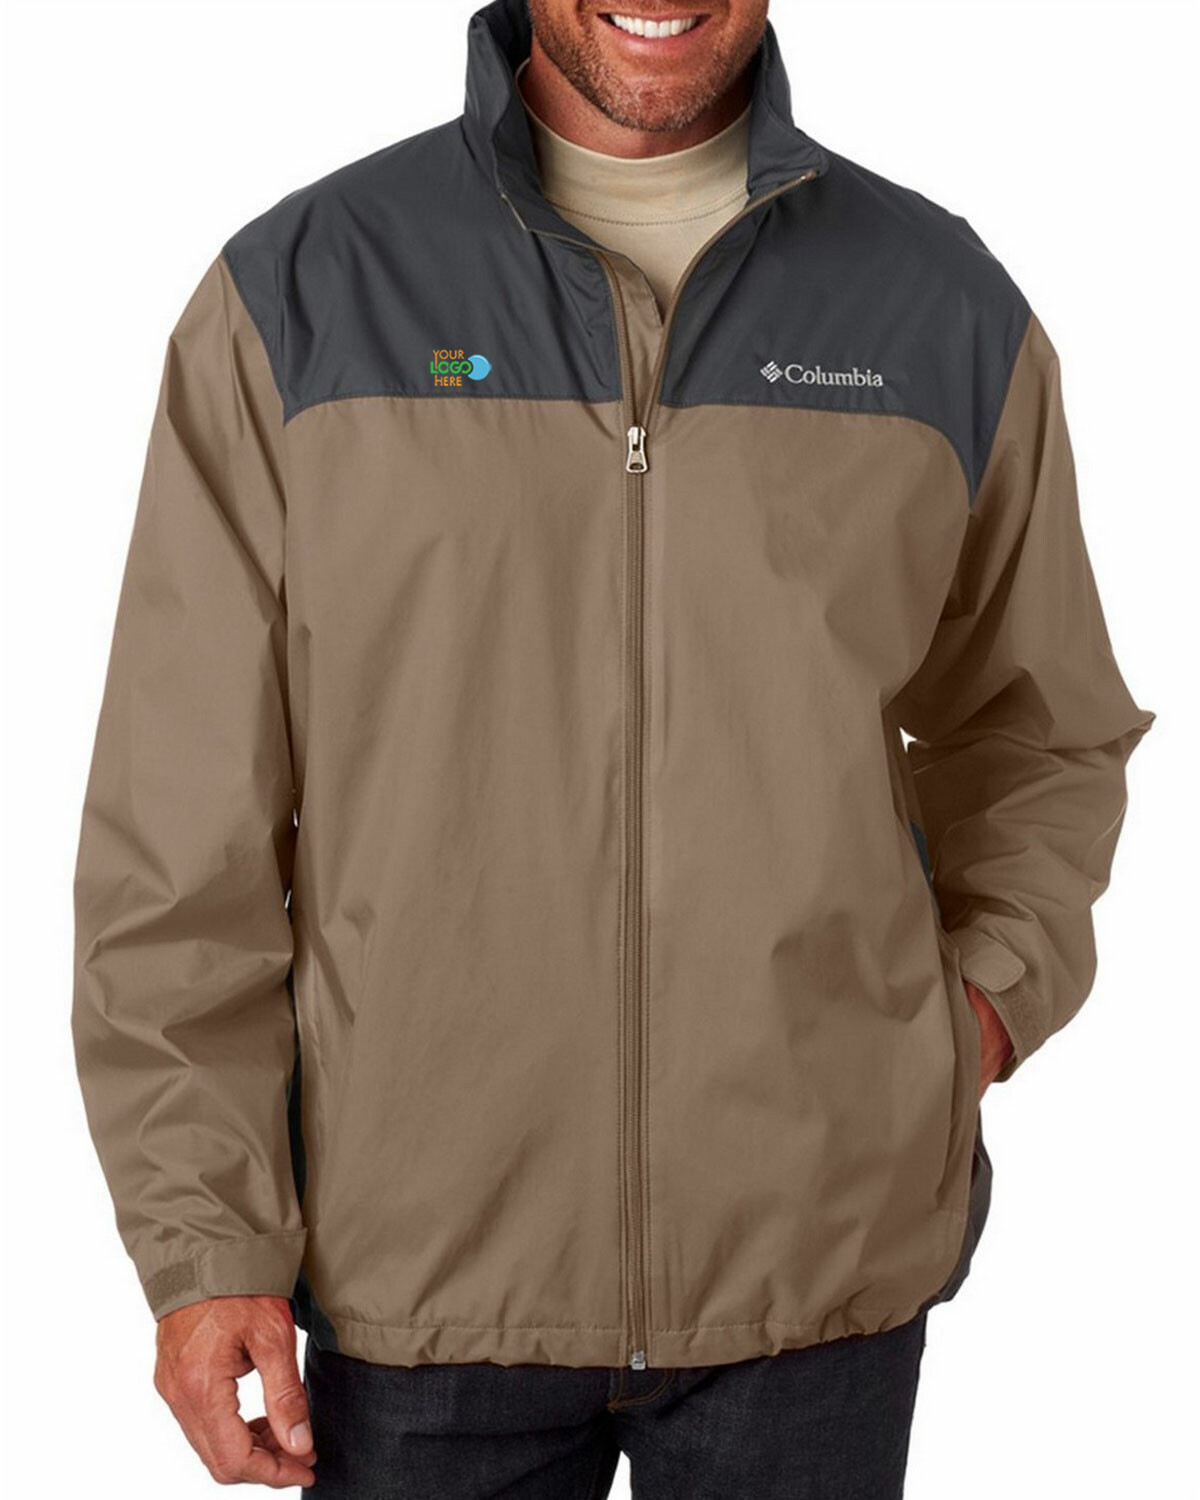 Augusta Sportswear 3160 Clear Rain Jacket - Clear - M